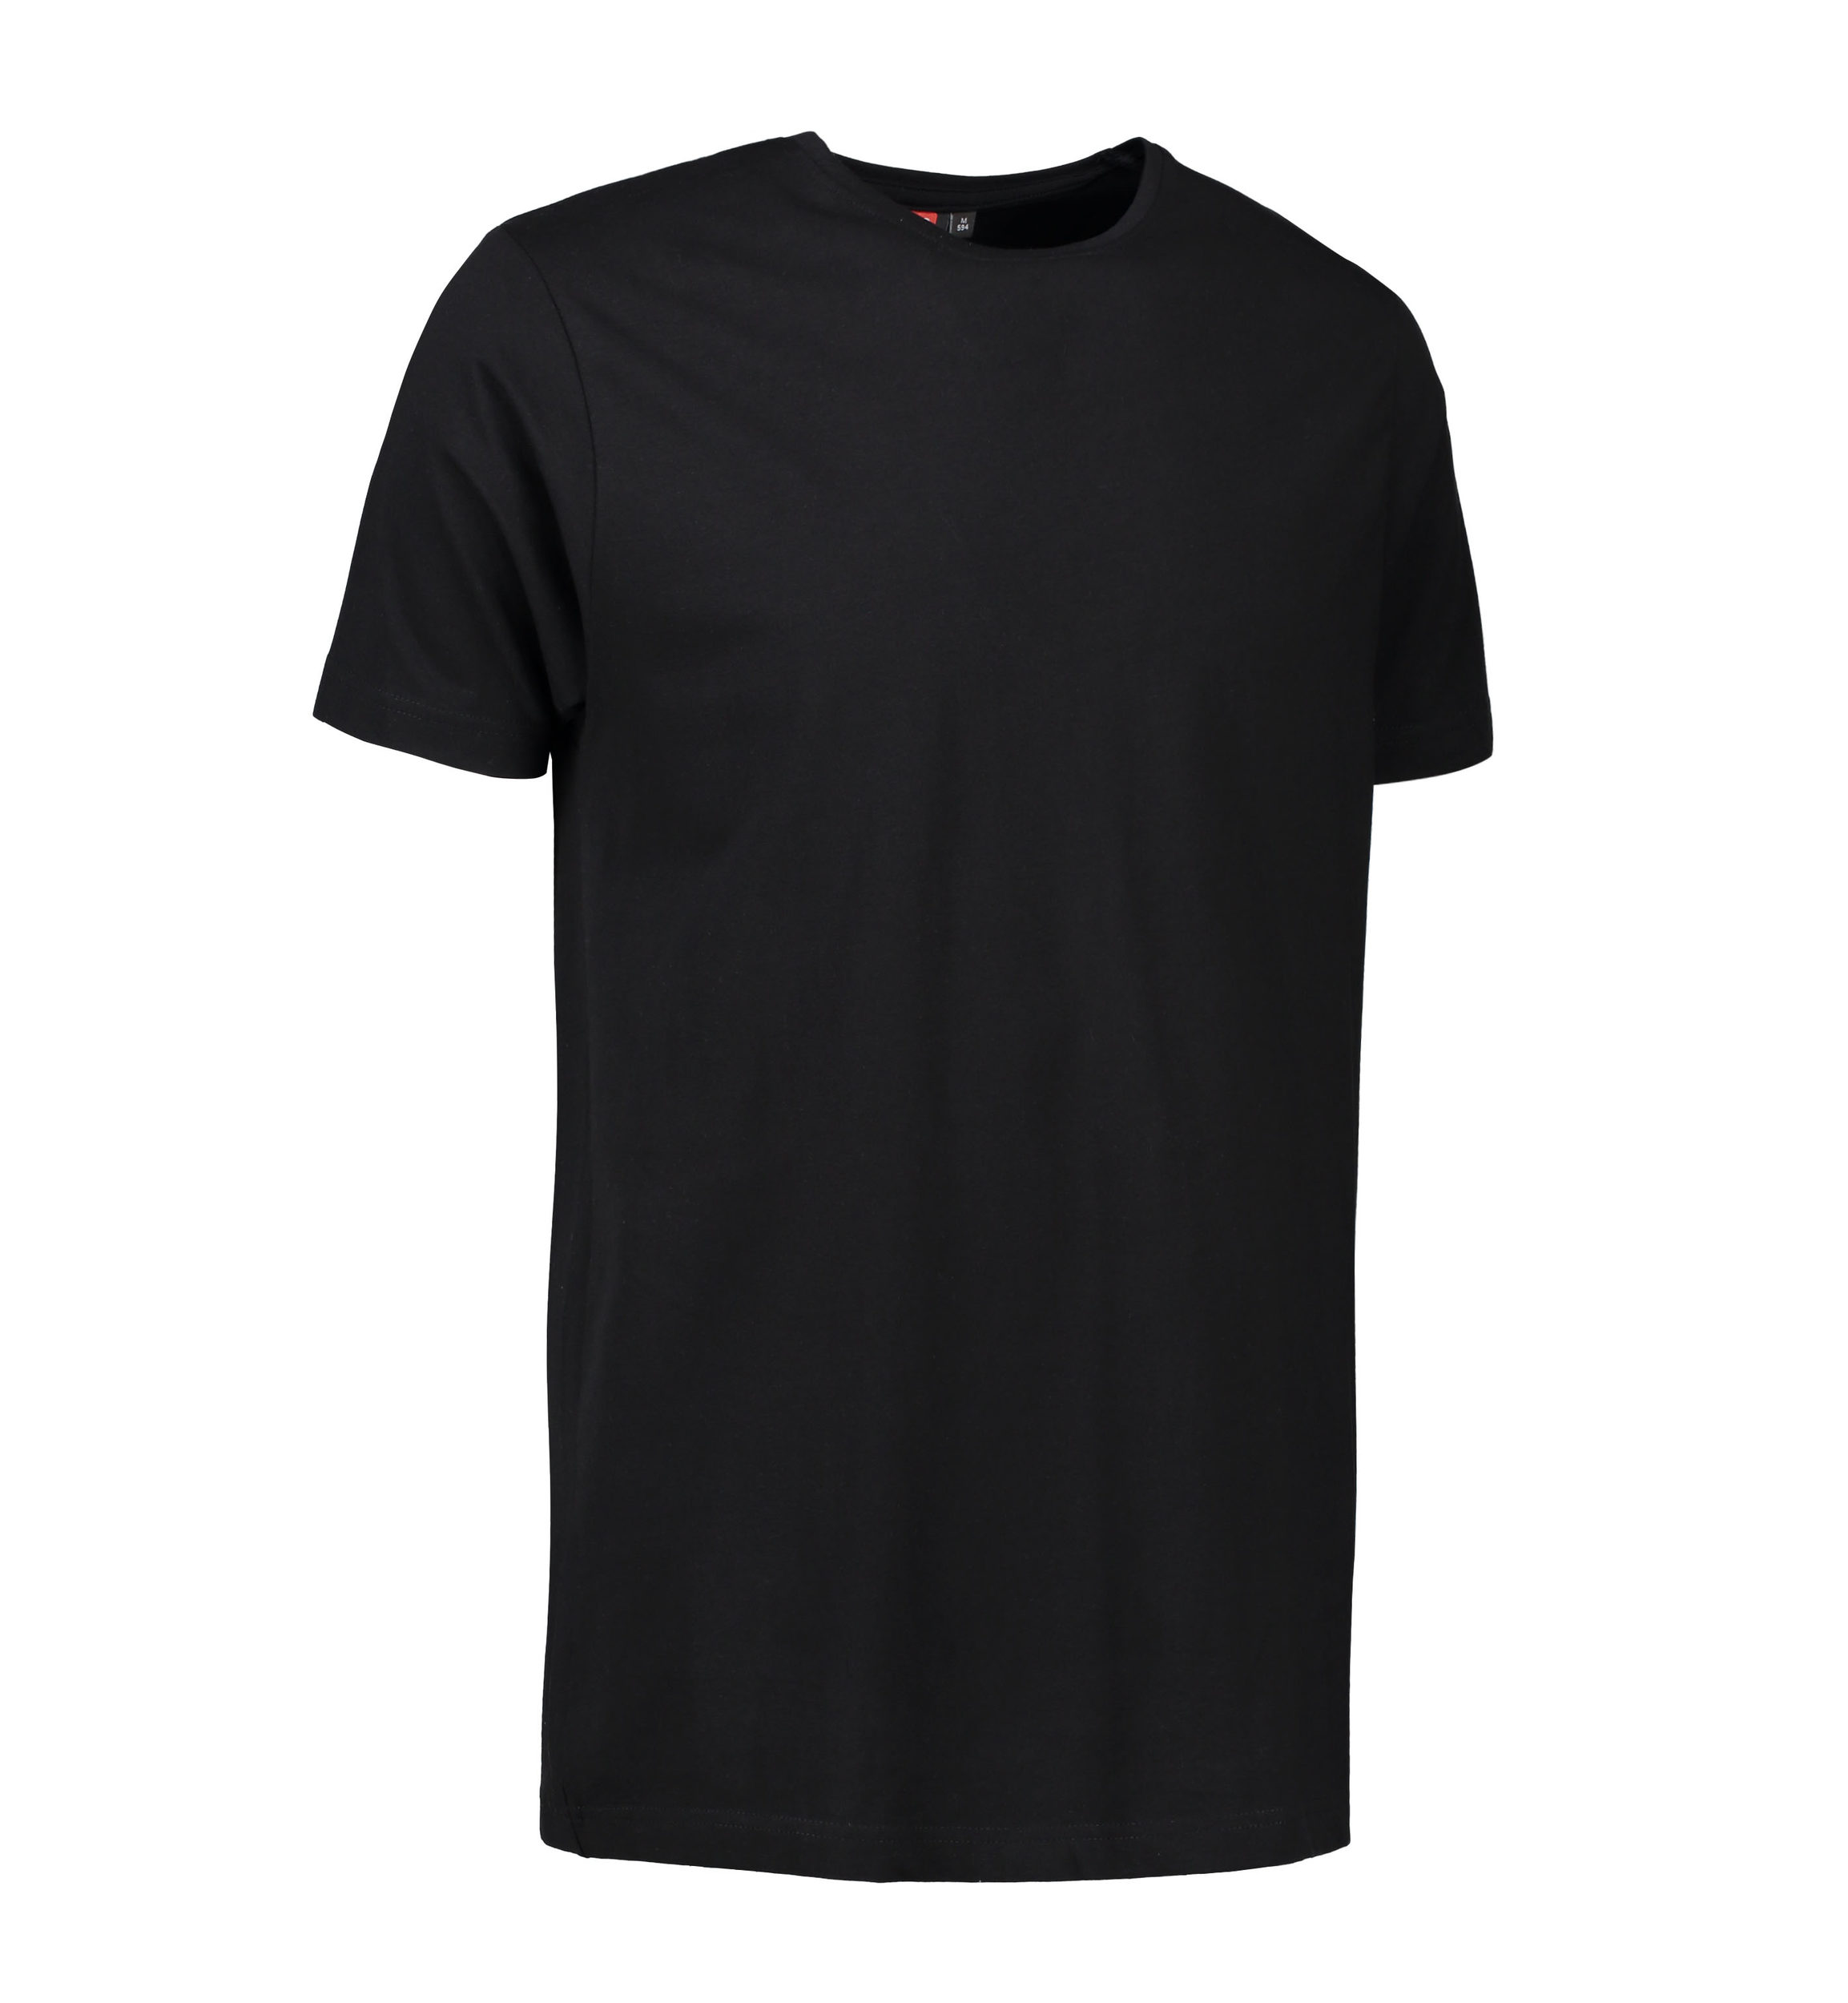 Billede af Stretch t-shirt til mænd i sort - XL hos Sygeplejebutikken.dk